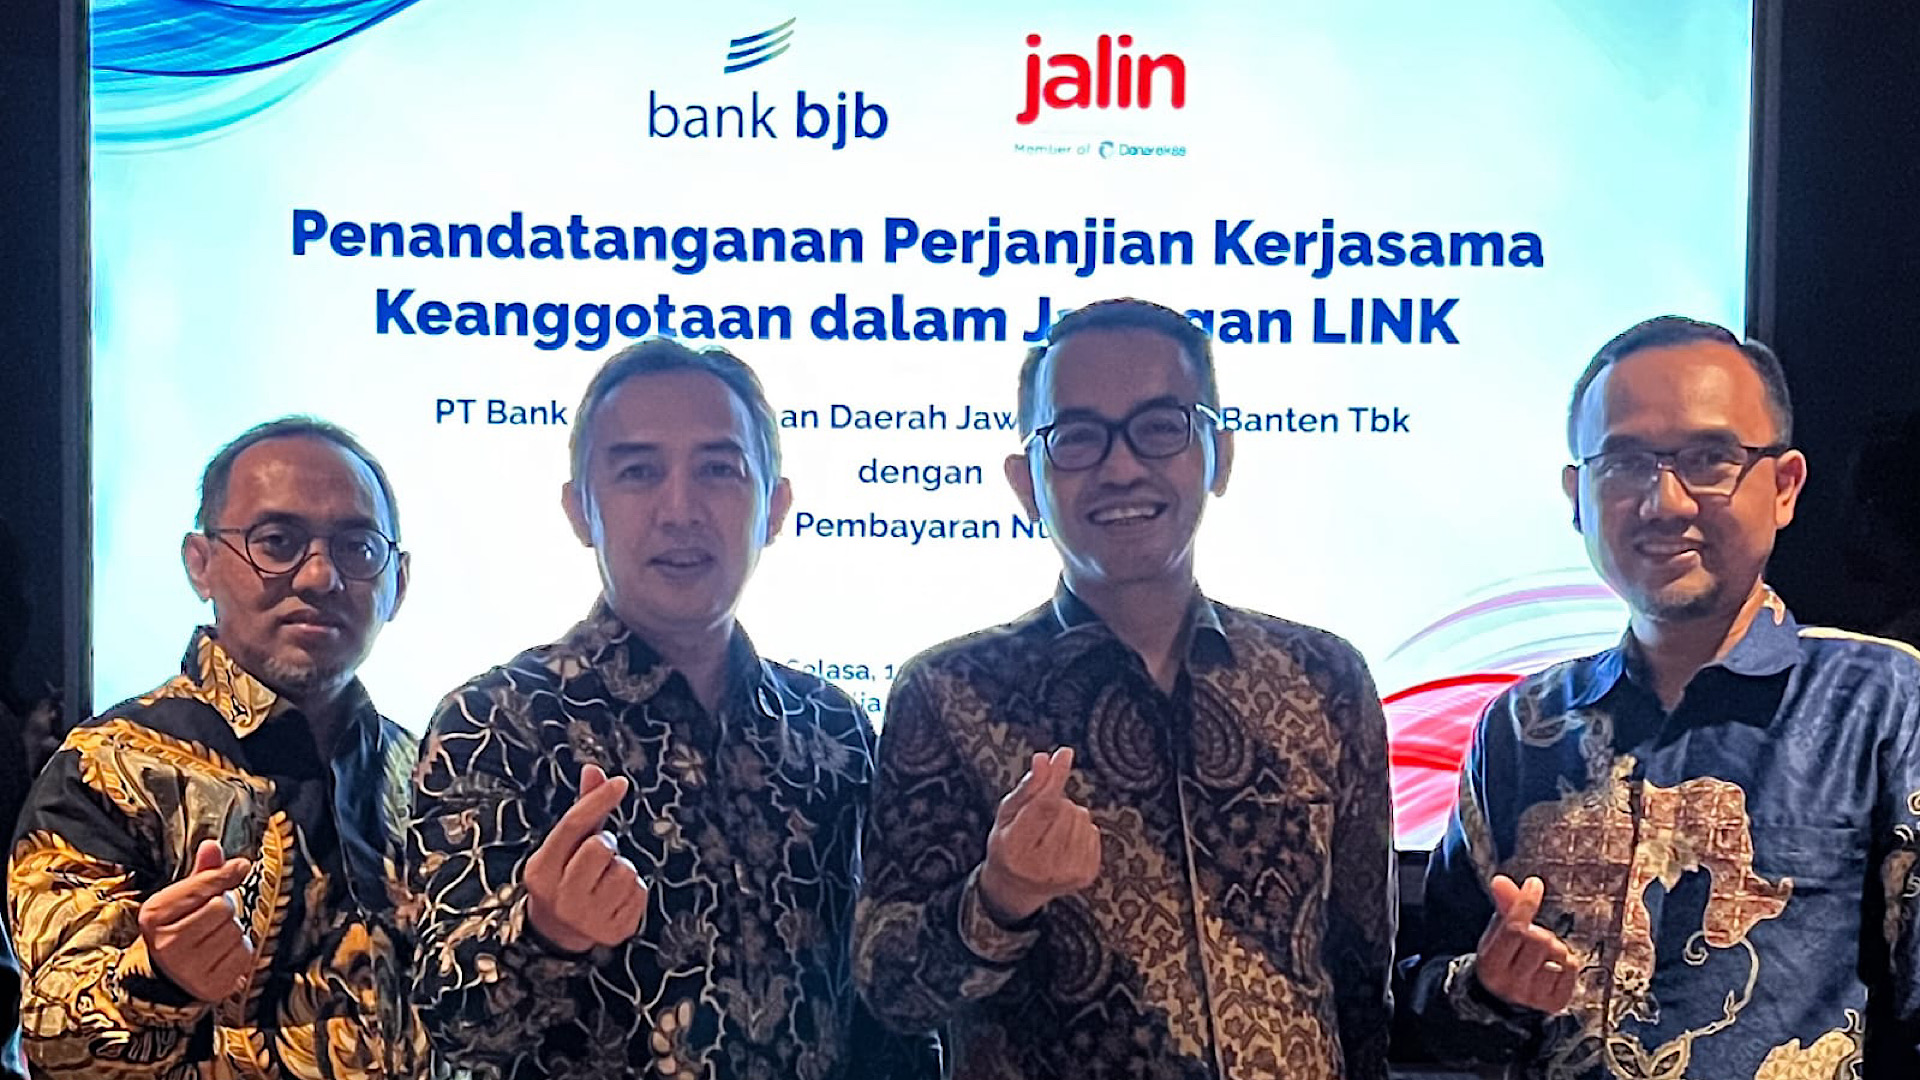 Bank bjb Kolaborasi dengan Jalin untuk Mendorong Inklusi Keuangan Nasional Melalui Digitalisasi